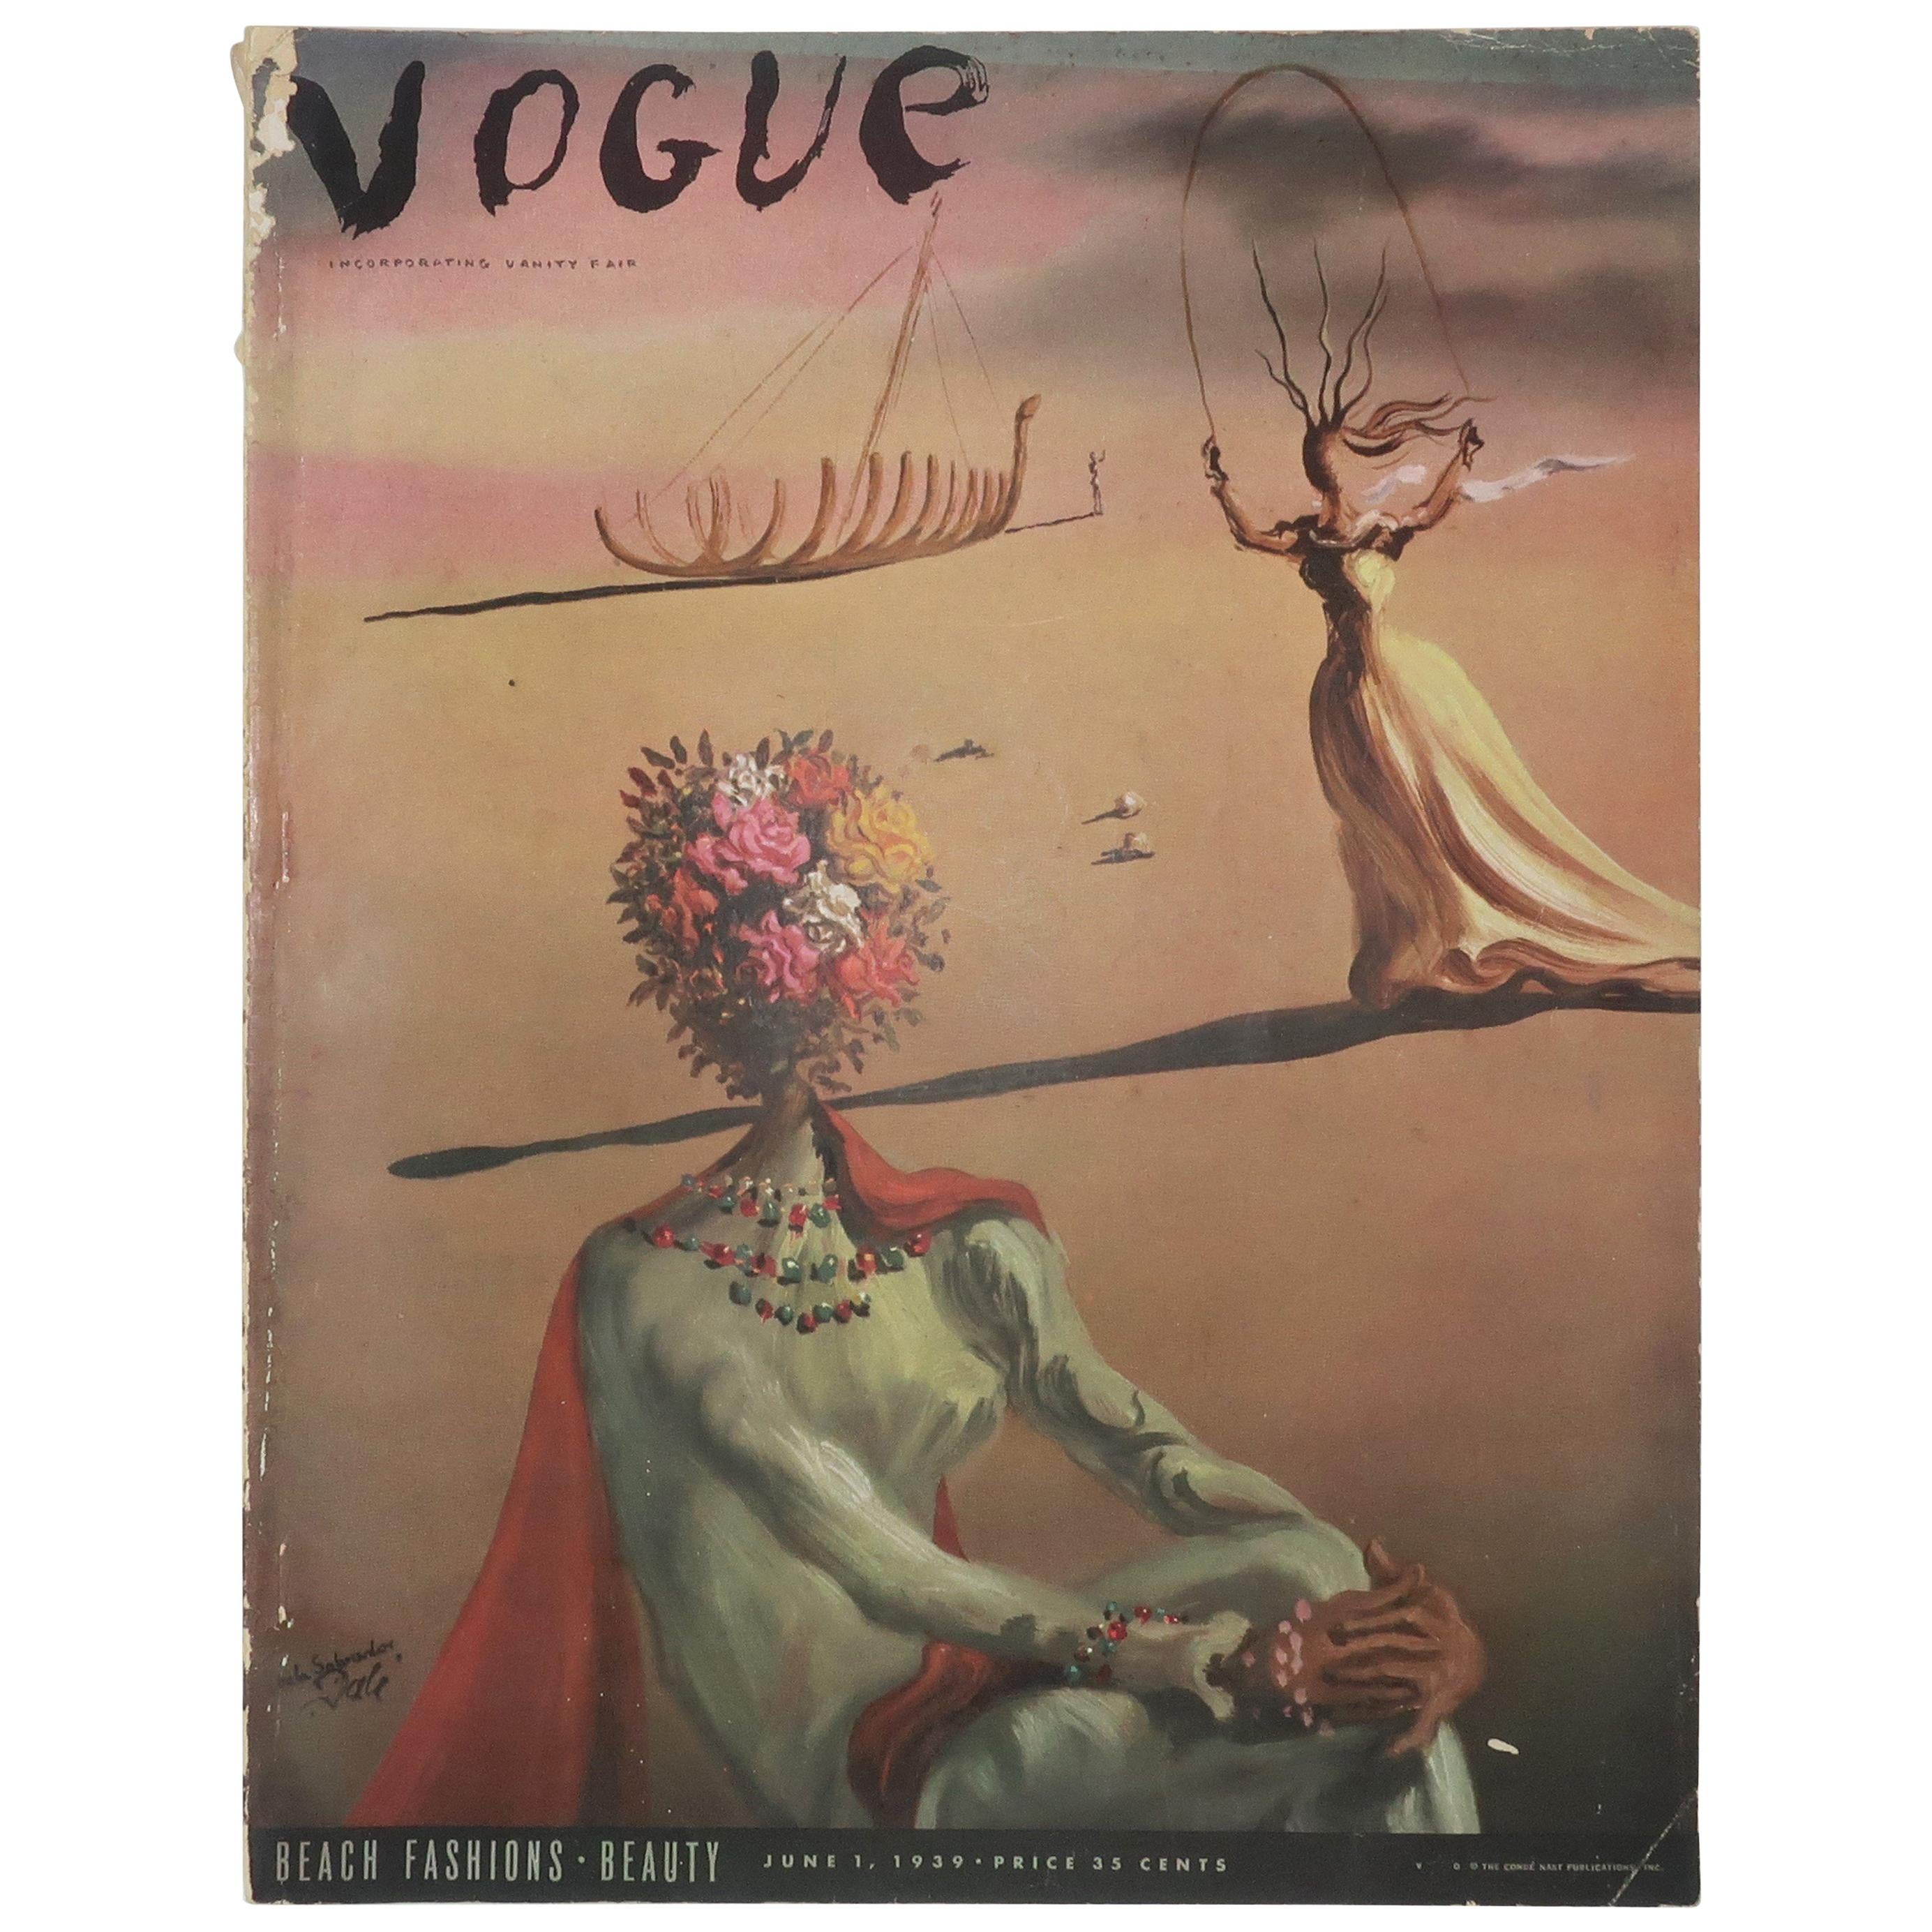 1939 Vogue Magazine With Salvador Dali Cover Art